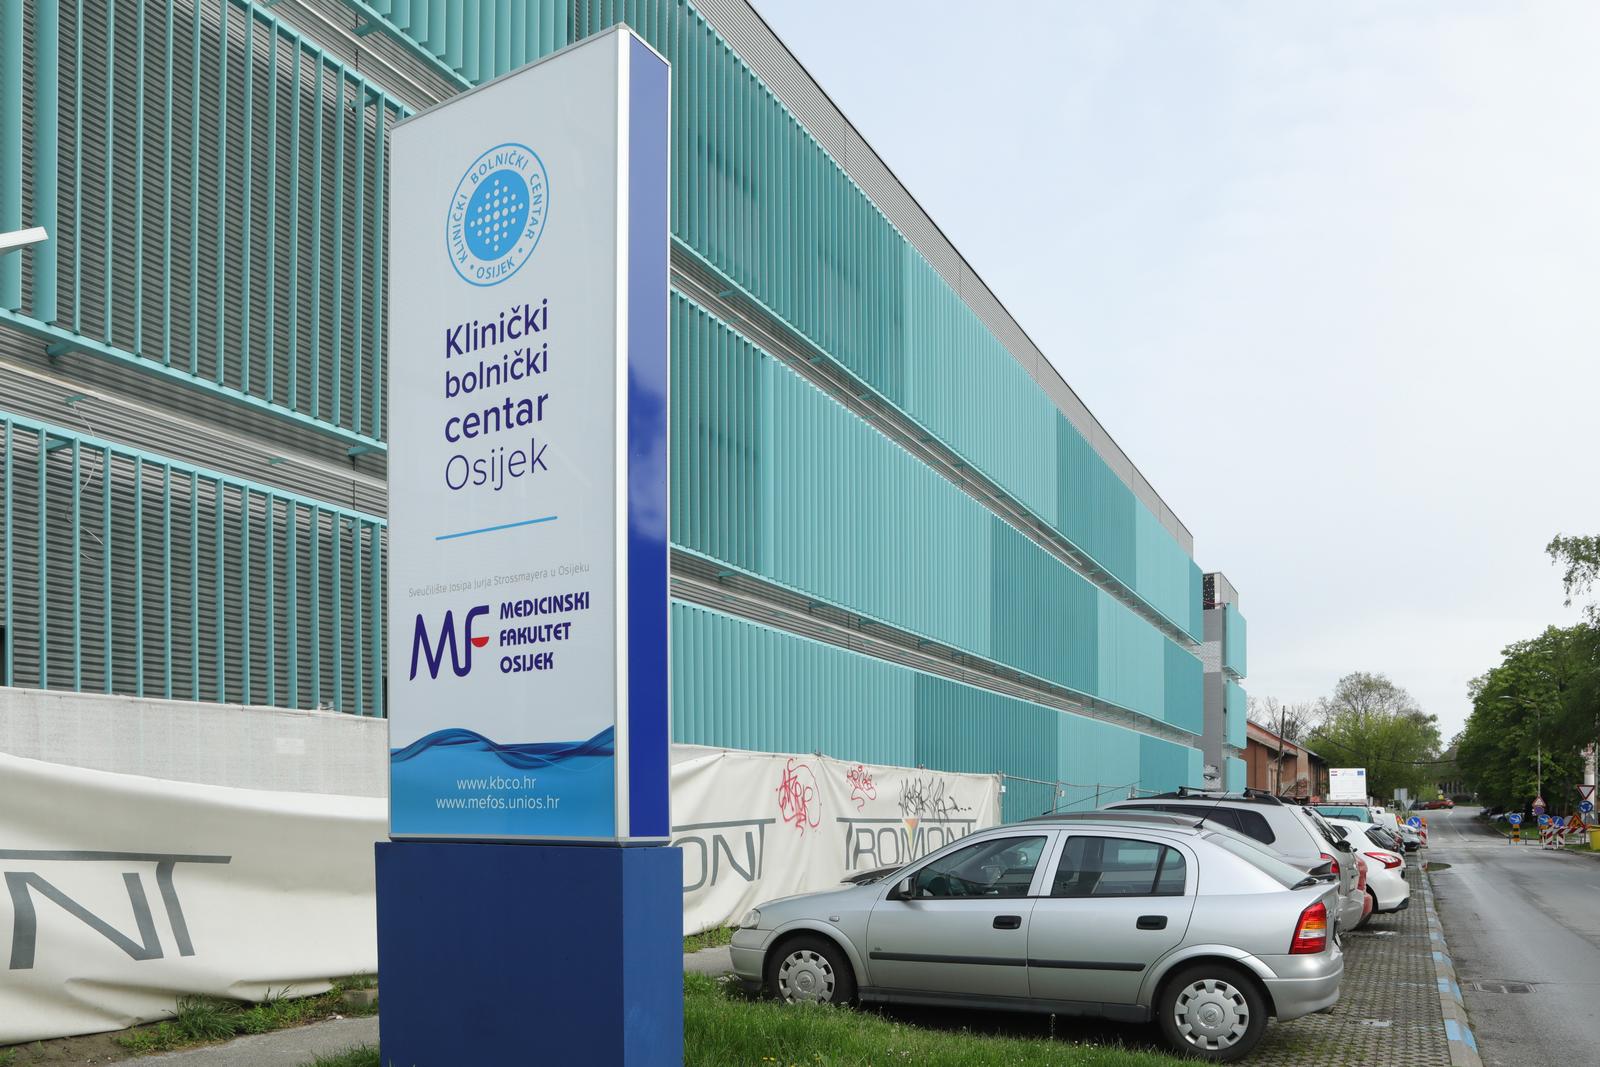 25.04.2023., Osijek - Radovi na zgradi Objedinjenog hitnog prijema (OHPB) koji su u zavrsnoj fazi izgradnje. Photo: Dubravka Petric/PIXSELL